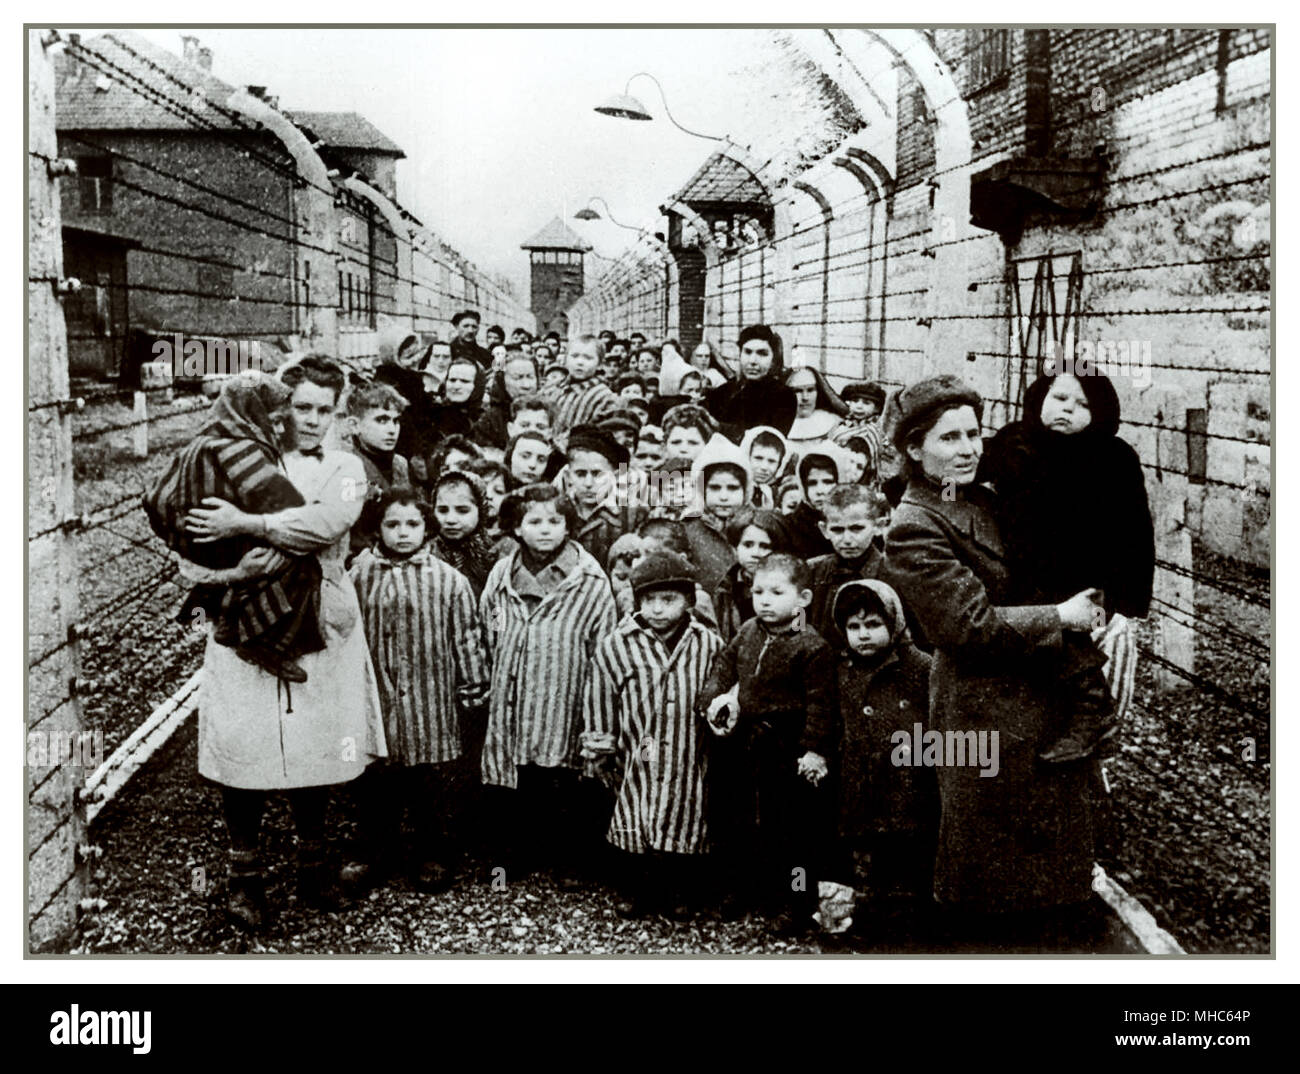 AUSCHWITZ BAMBINI SOPRAVVISSUTI DETENUTI NEONATI E DONNE UNIFORMI DA CAMPO A STRISCE LIBERAZIONE chiusa da tratti di filo spinato elettrificato e posti di guardia, che fissano senza emozione i loro liberatori. Un'altra cornice di orrore dal campo di concentramento nazista di Auschwitz Birkenau. Data di liberazione: Gennaio 27 1945. Foto Stock